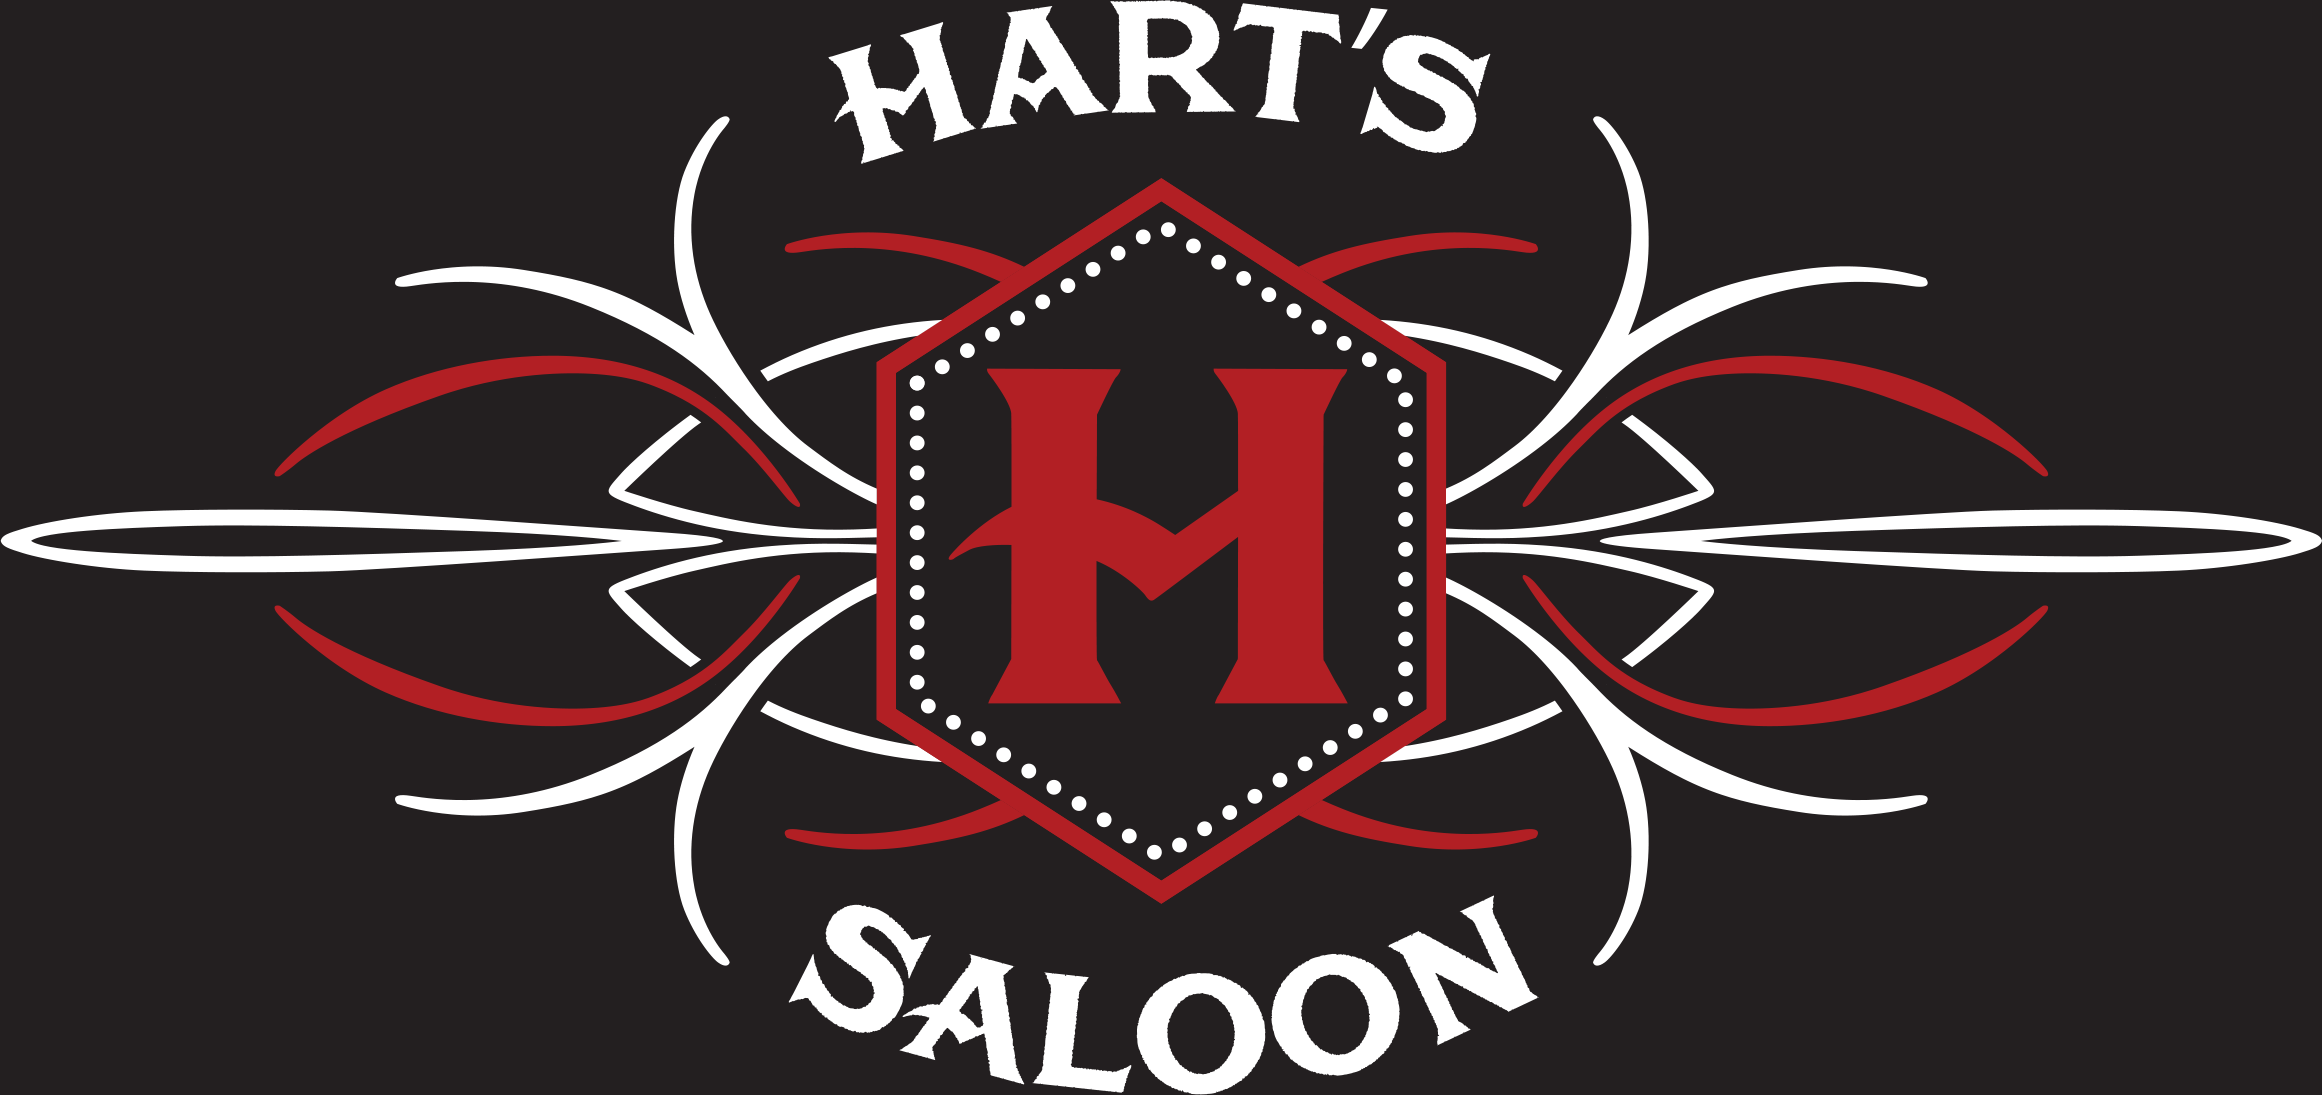 Hart's Saloon